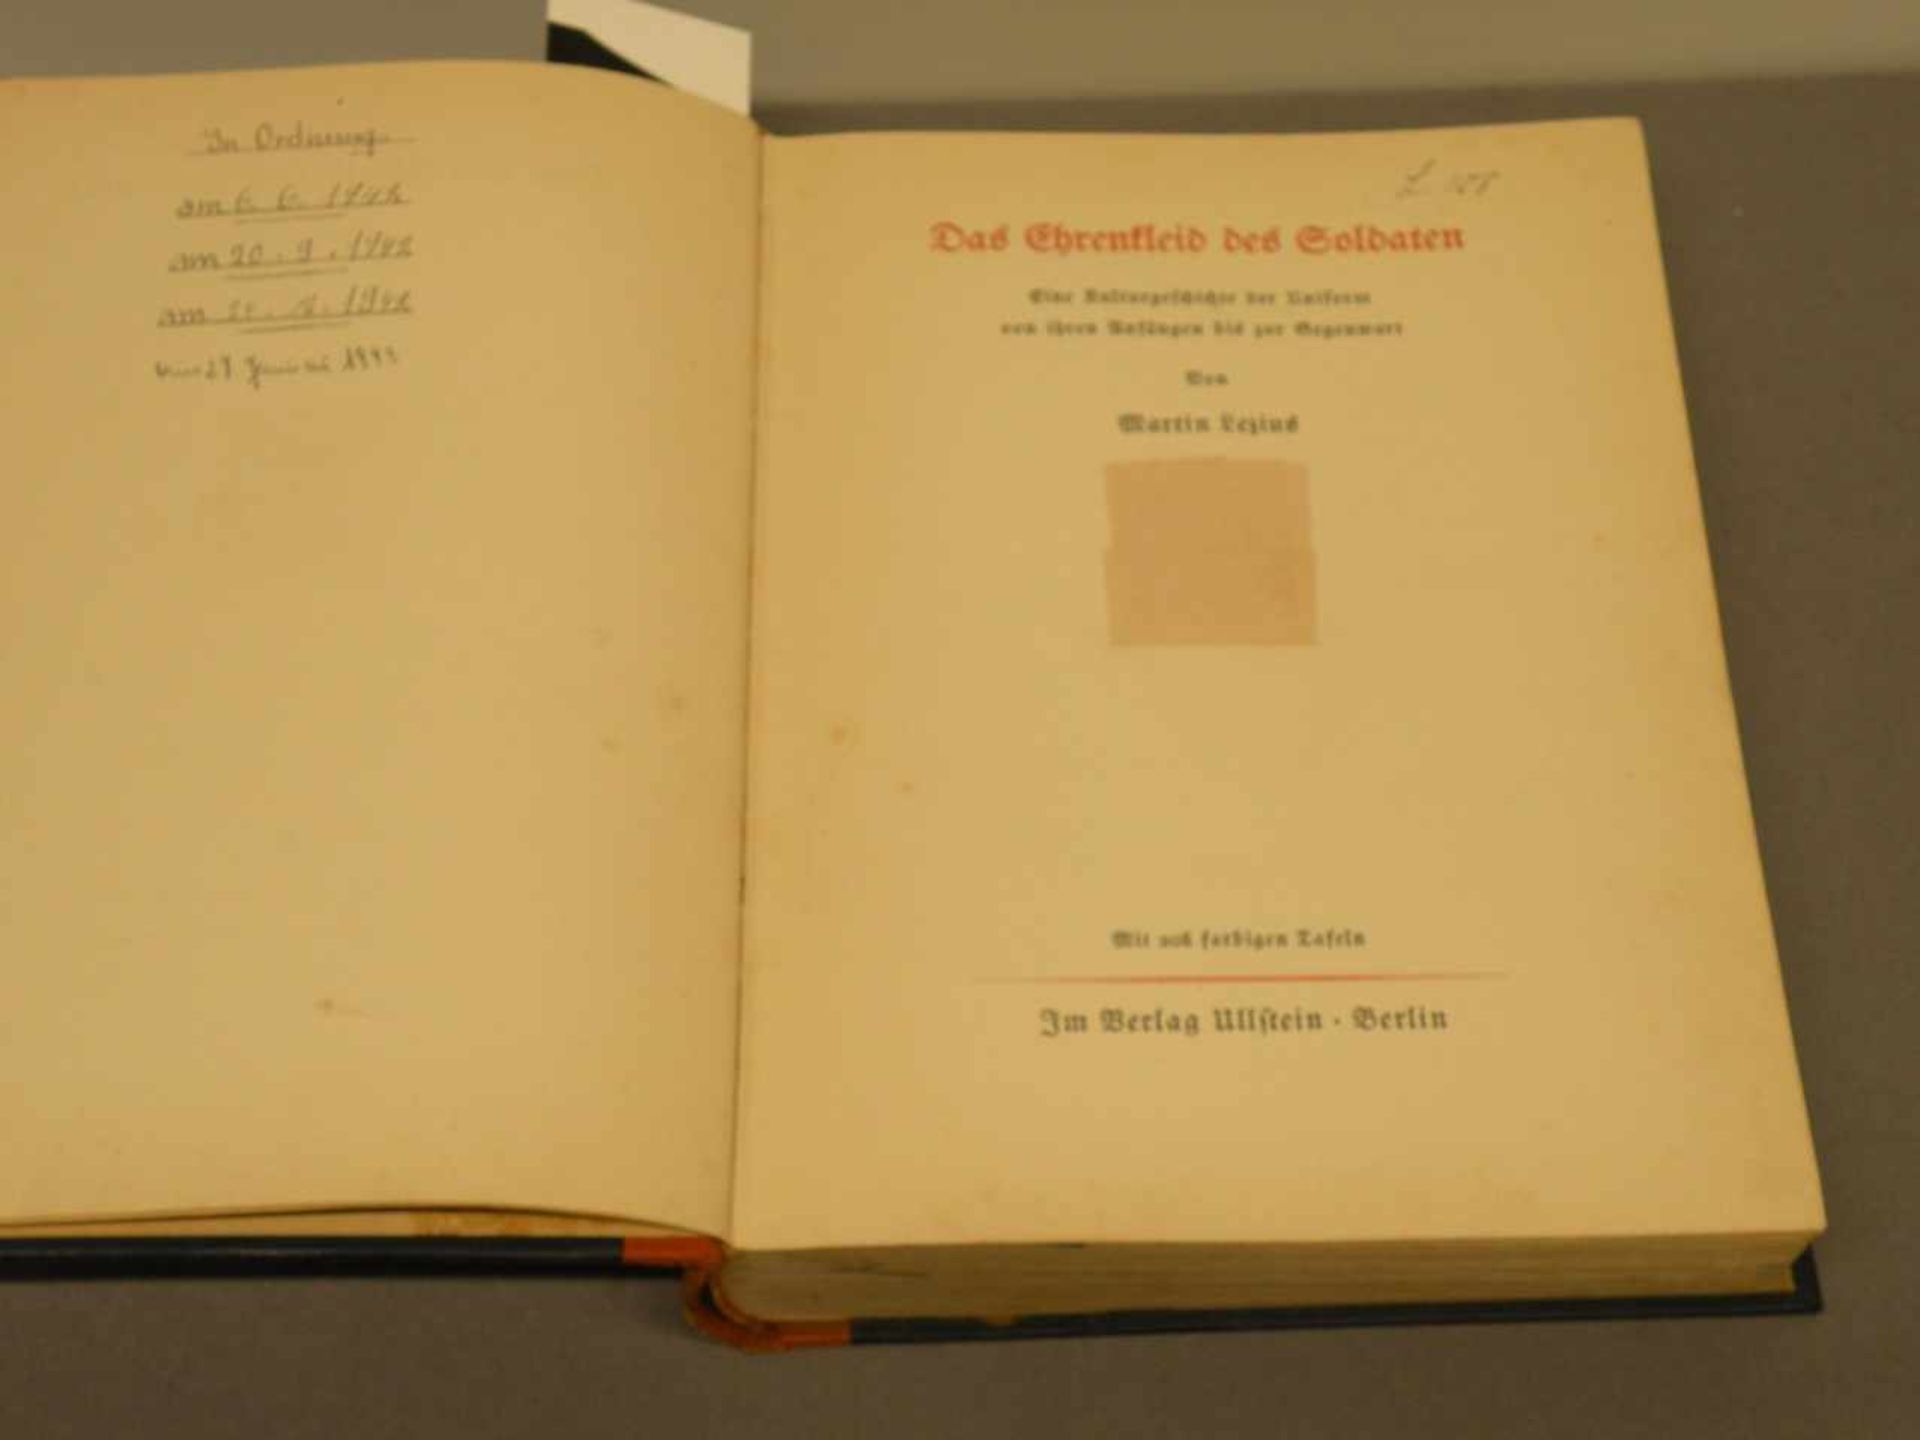 Buch "Das Ehrenkleid des Soldaten", illustriert, Verlag Ullstein, Berlin, 1936, fleckig